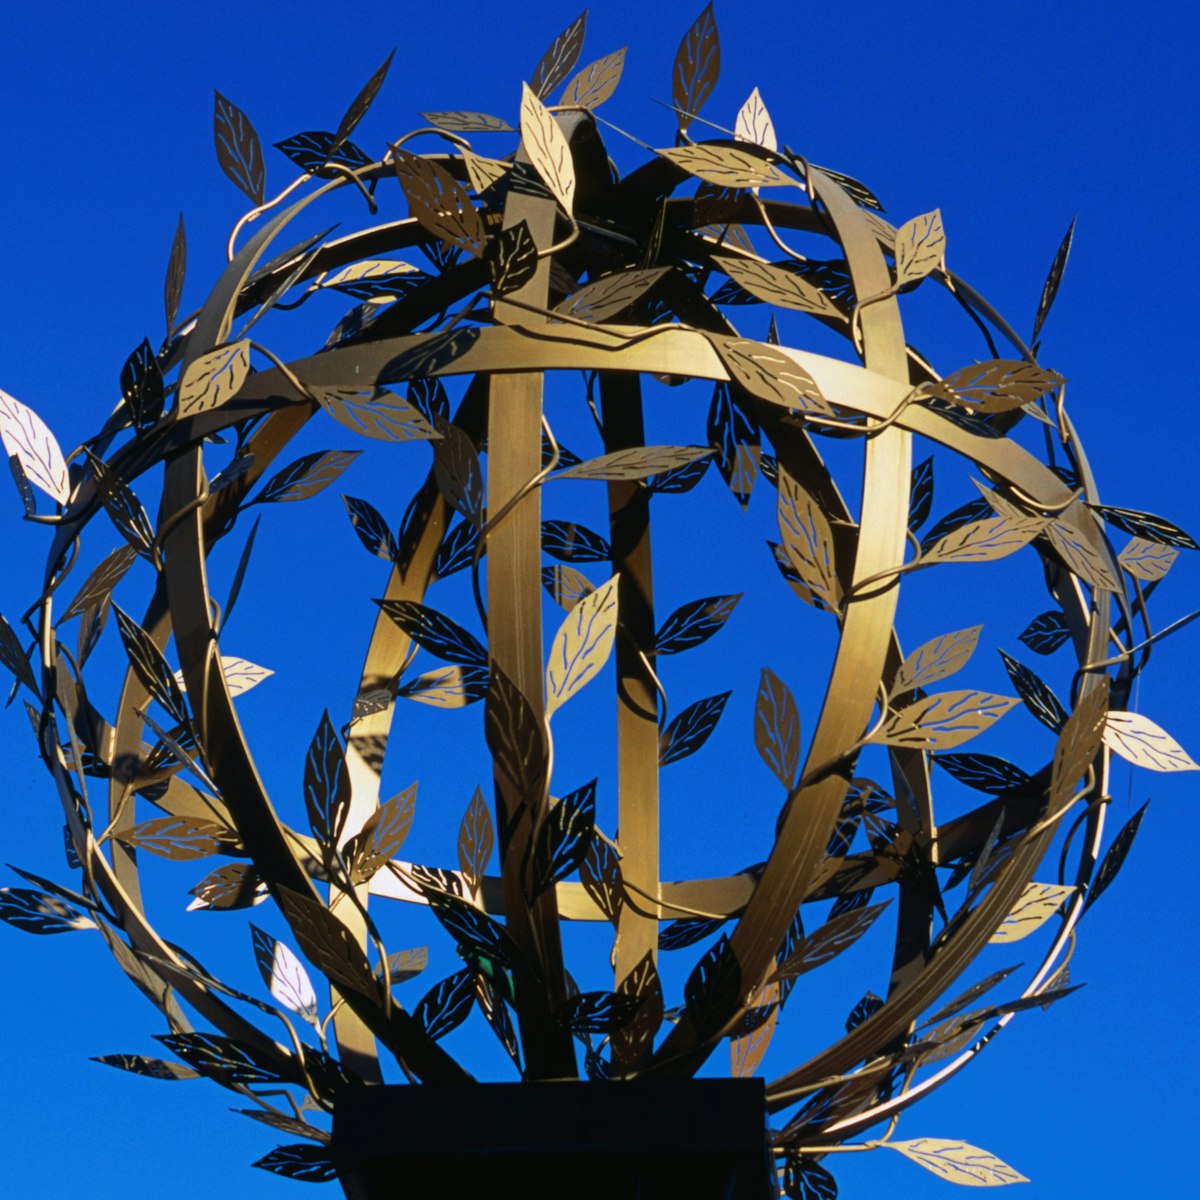 A decorative sphere at the exhibition centre Technopolis at Gazi.